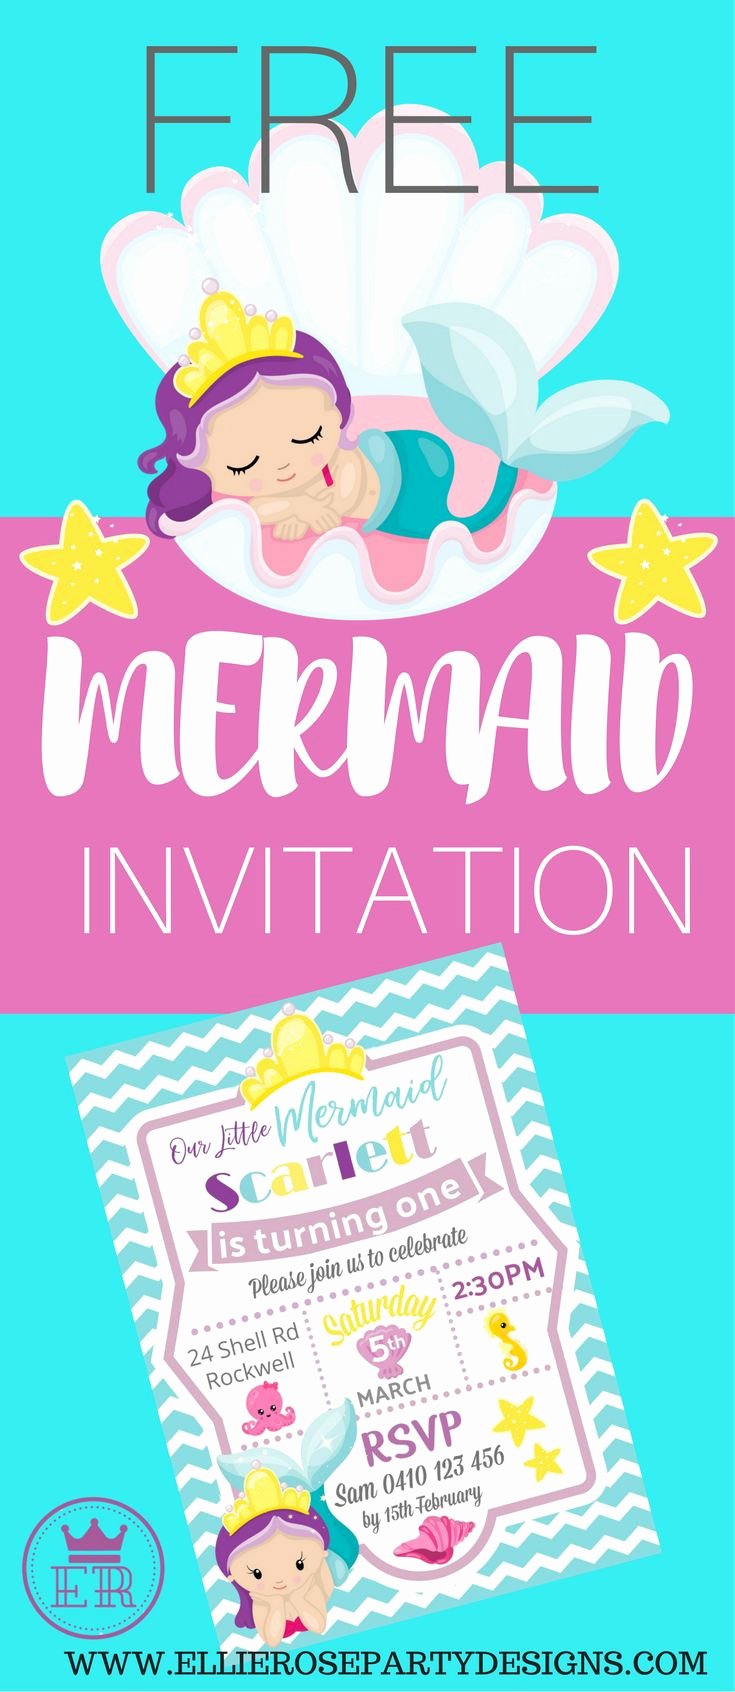 Mermaid Birthday Invitation Templates Elegant Best 25 Mermaid Party Invitations Ideas On Pinterest